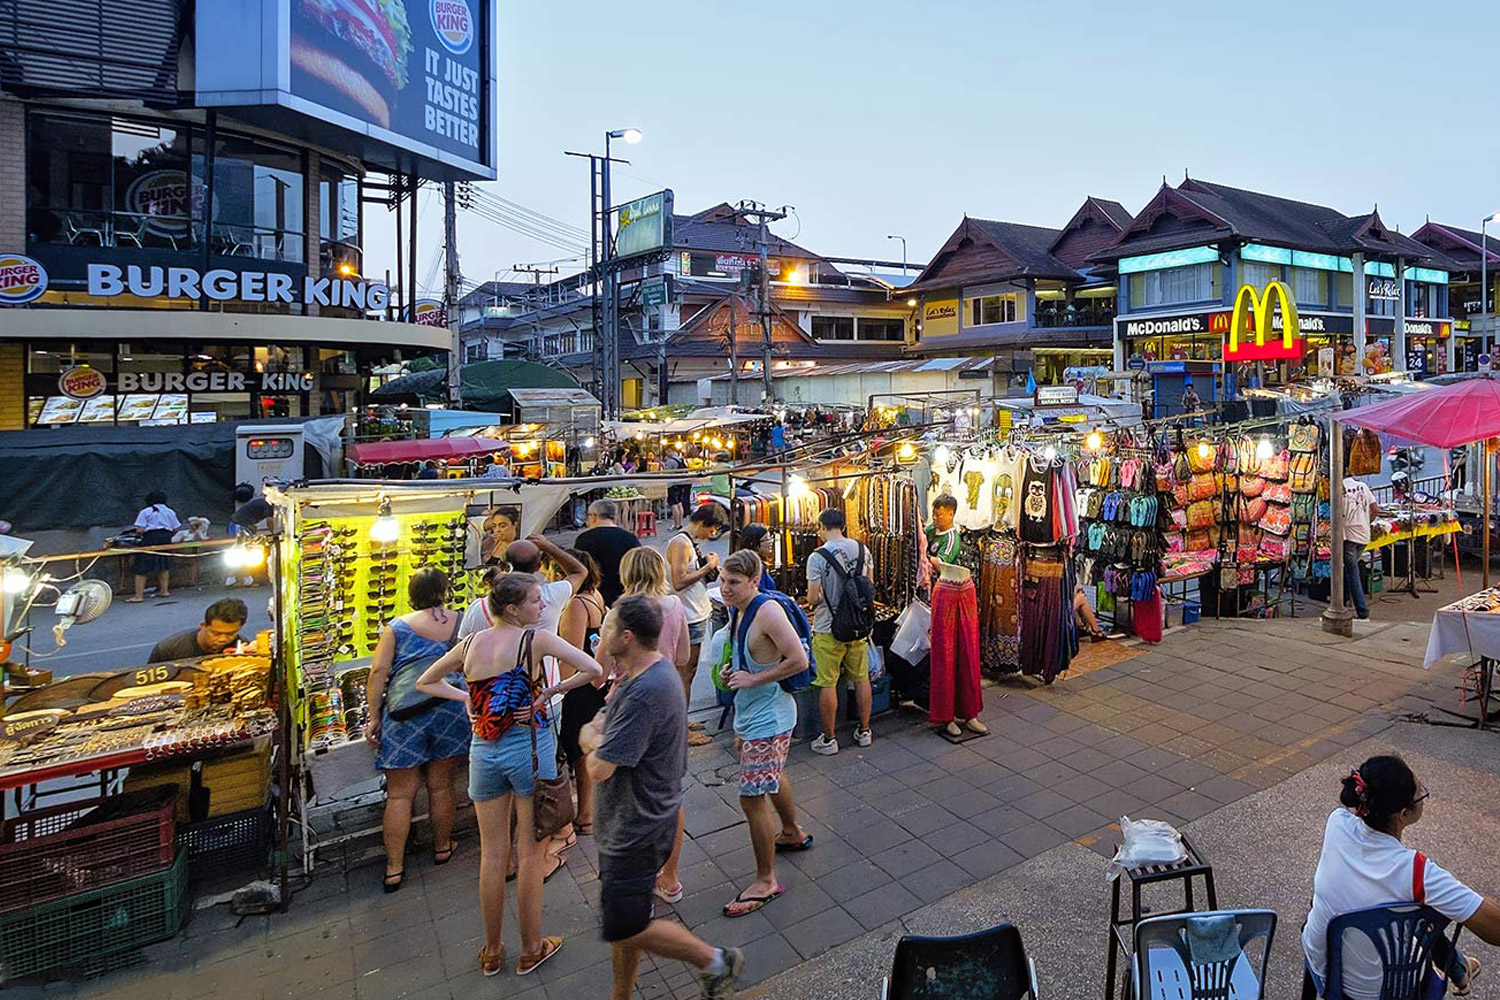 Chiang Mai Night Bazaar